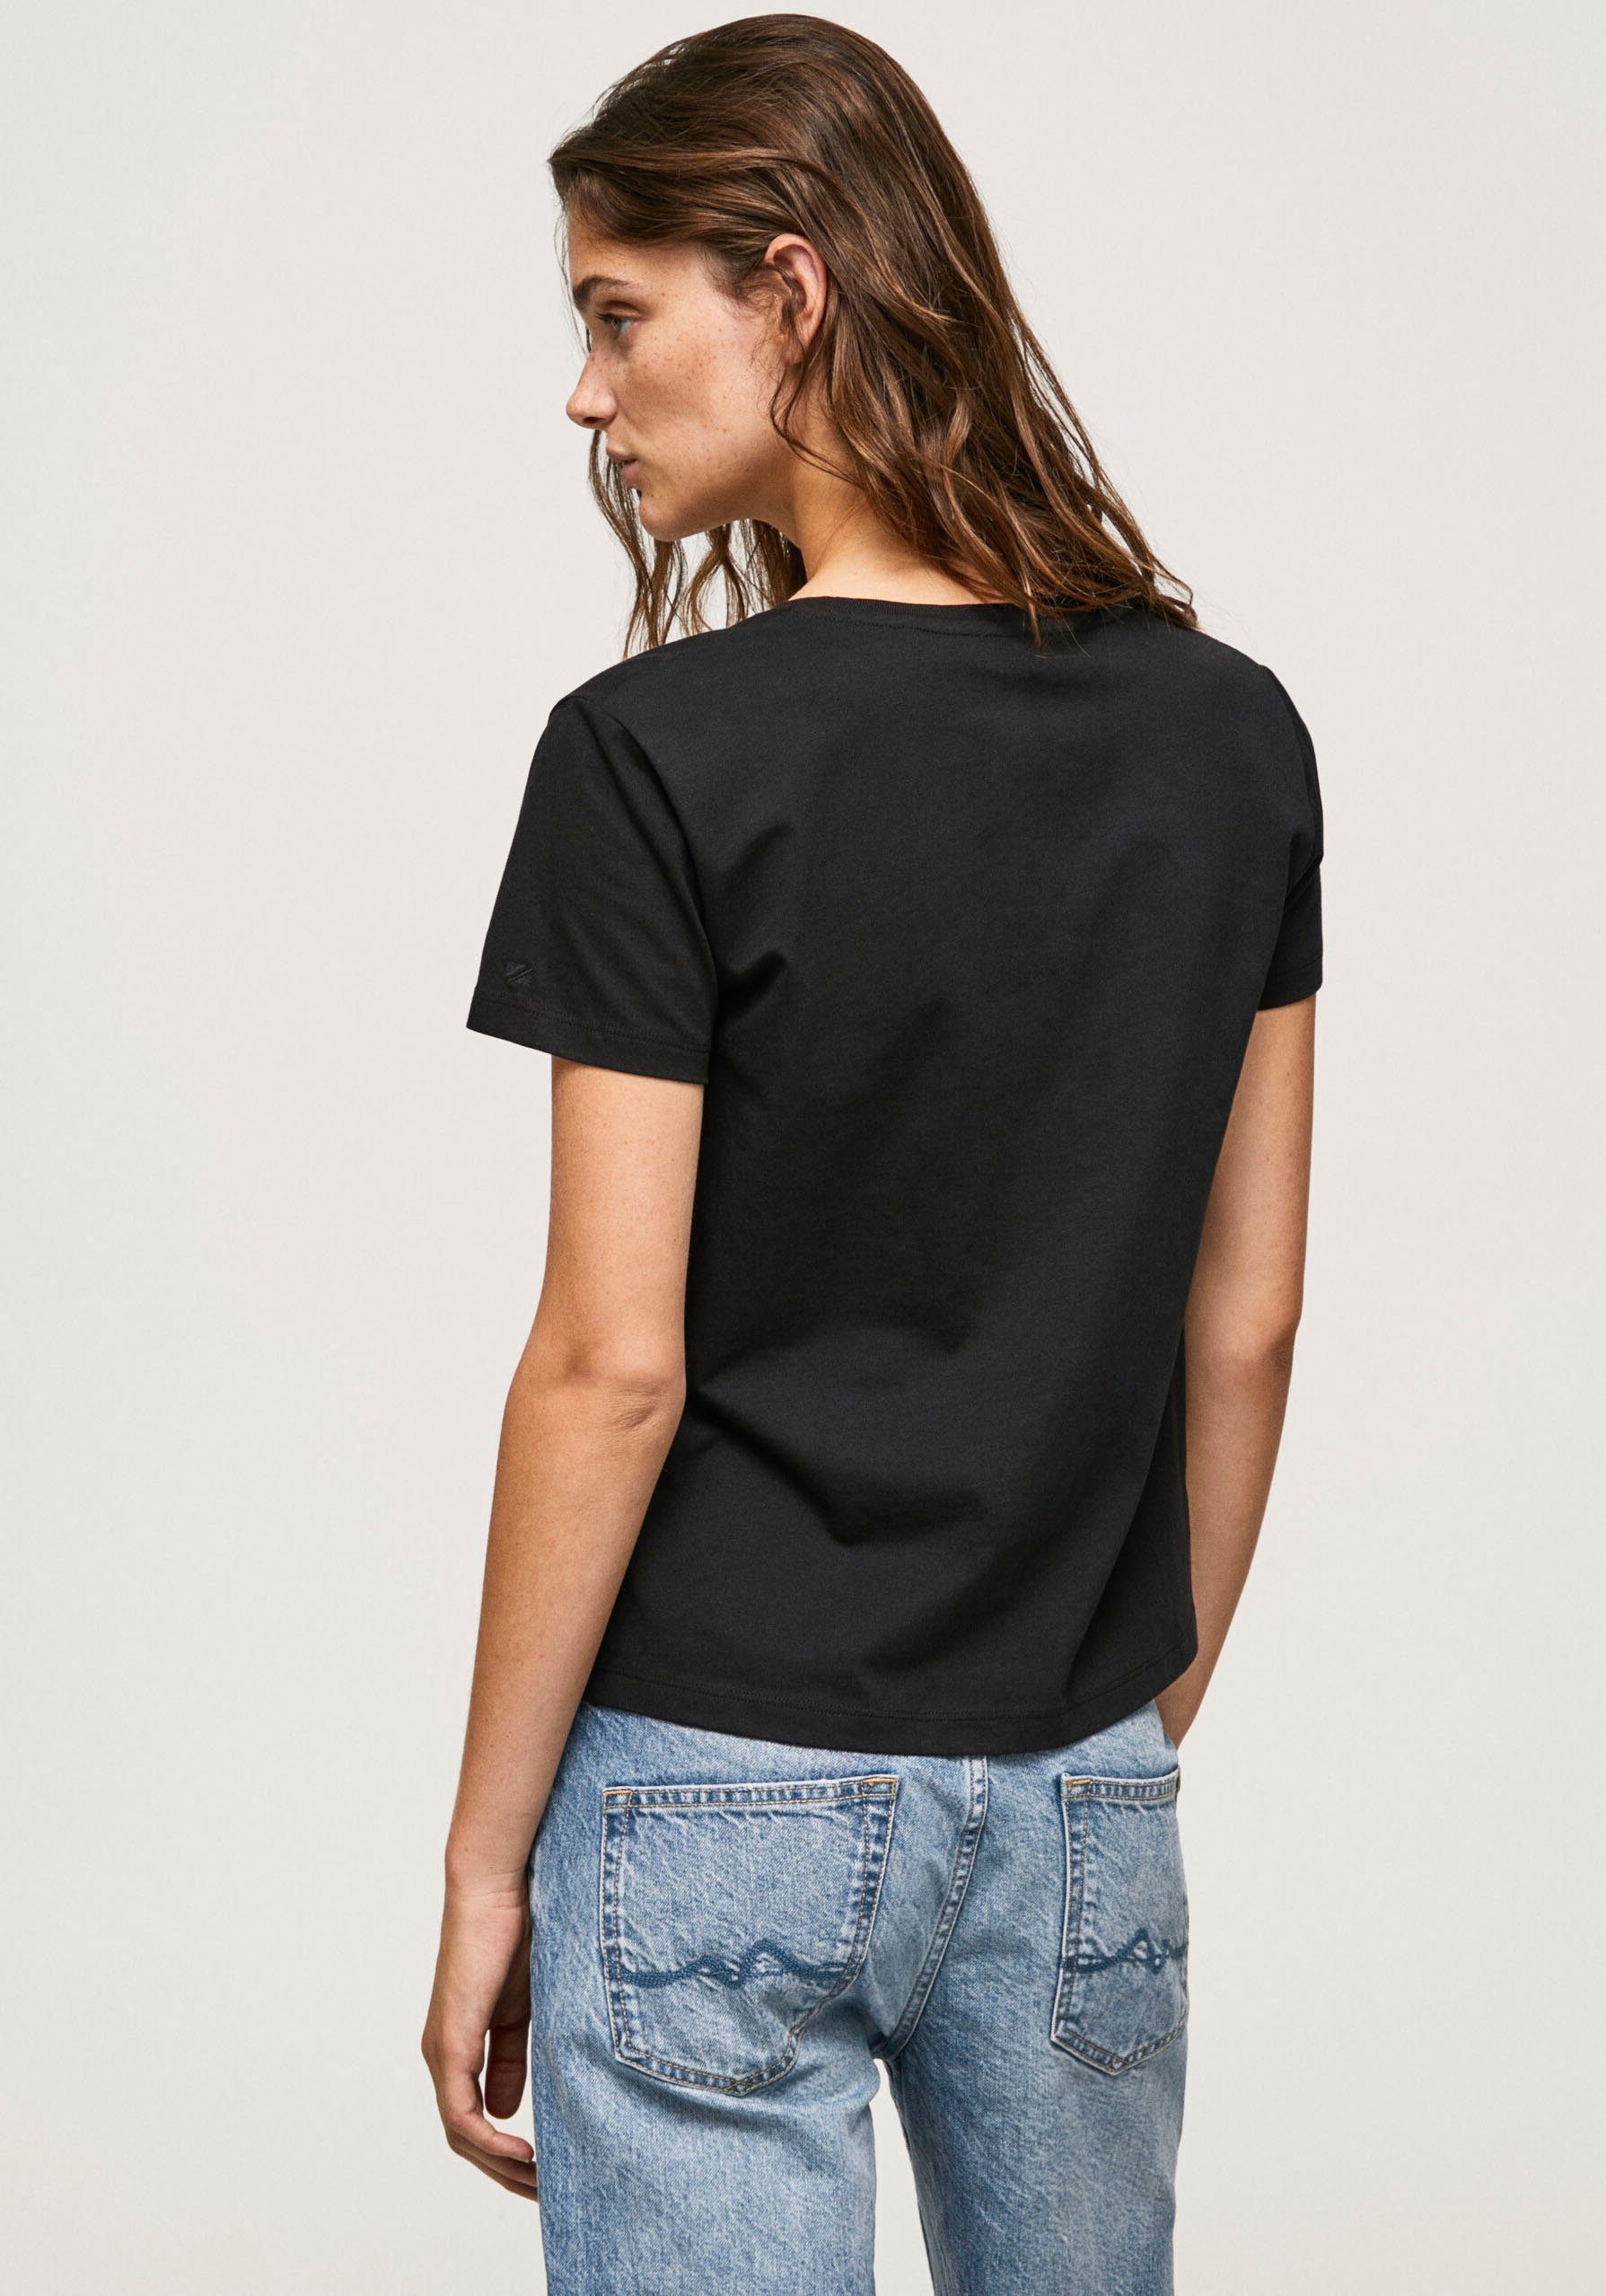 Pepe Jeans T-Shirt black Lali